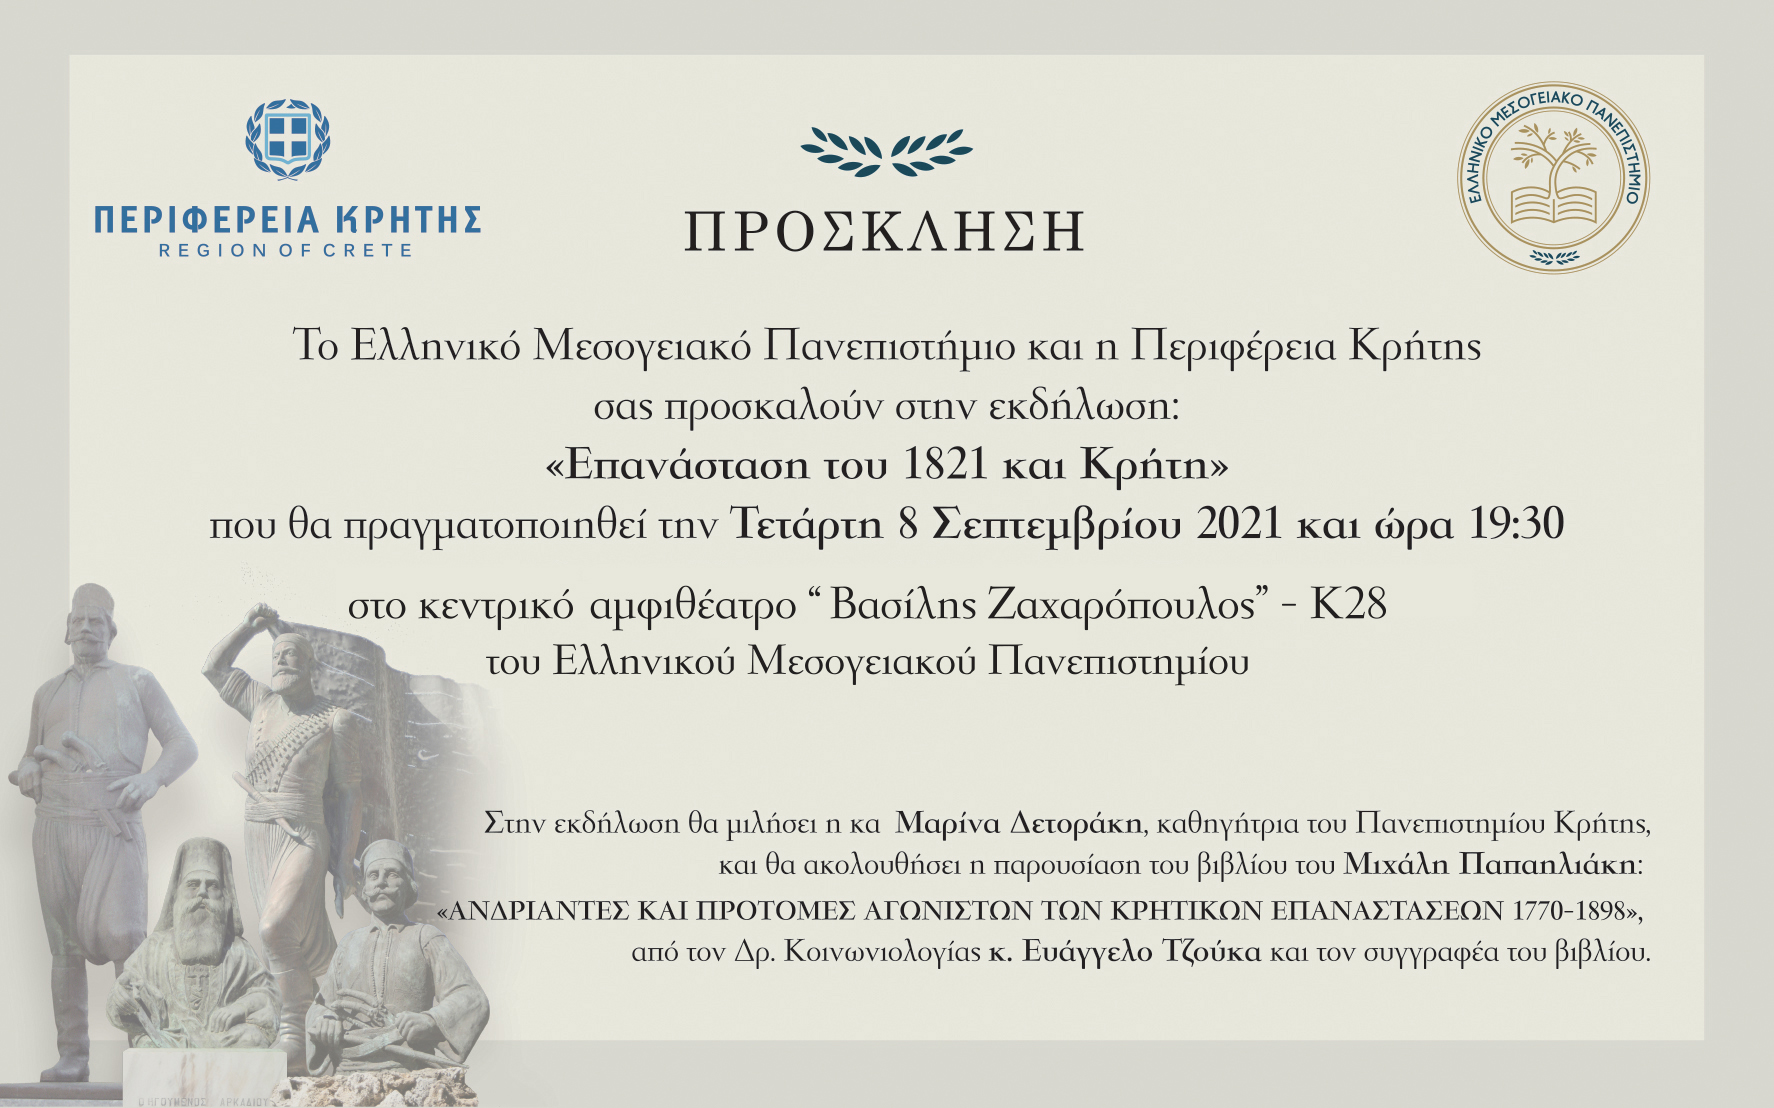 Εκδήλωση με θέμα «Επανάσταση του 1821 και Κρήτη» διοργανώνει το ΕΛΜΕΠΑ